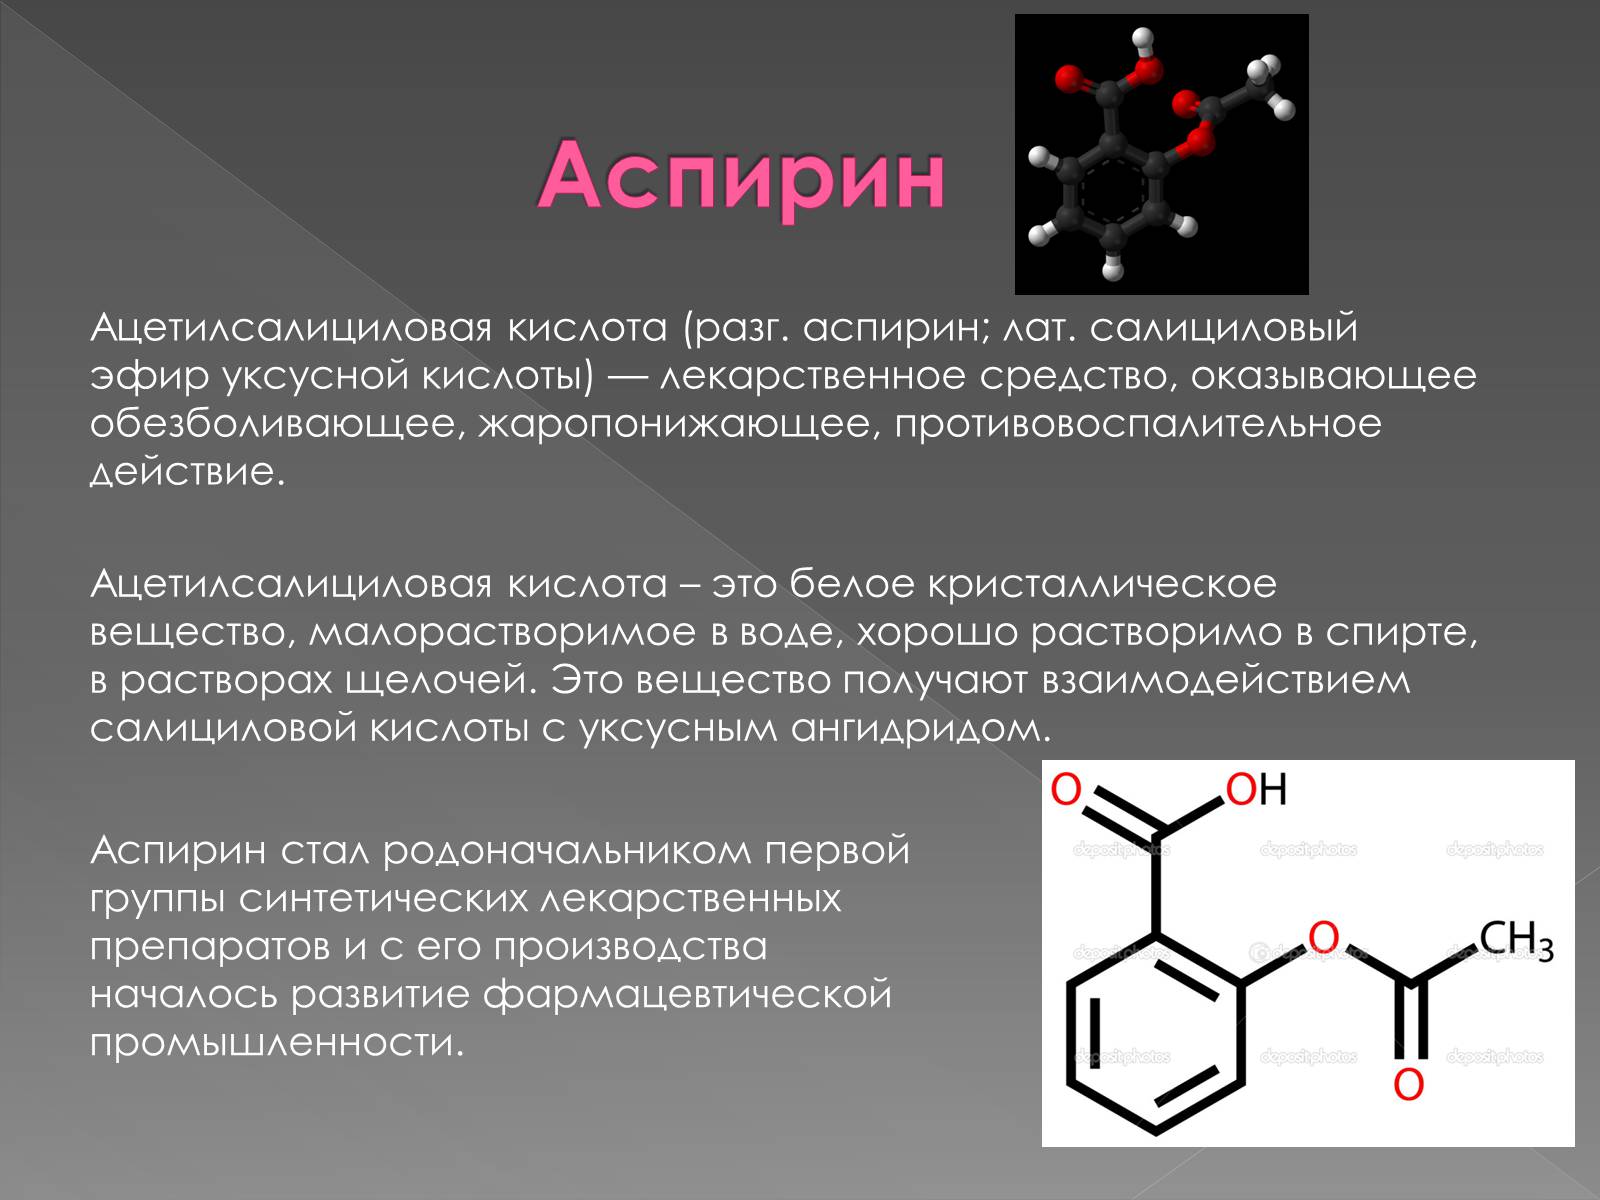 В некоторых случаях вещества. Структурная формула 2-ацетилоксибензойной кислоты. Ацетилсалициловая кислота формула химическая. Ацетилсалициловая кислота формула. Химическая структура ацетилсалициловой кислоты.